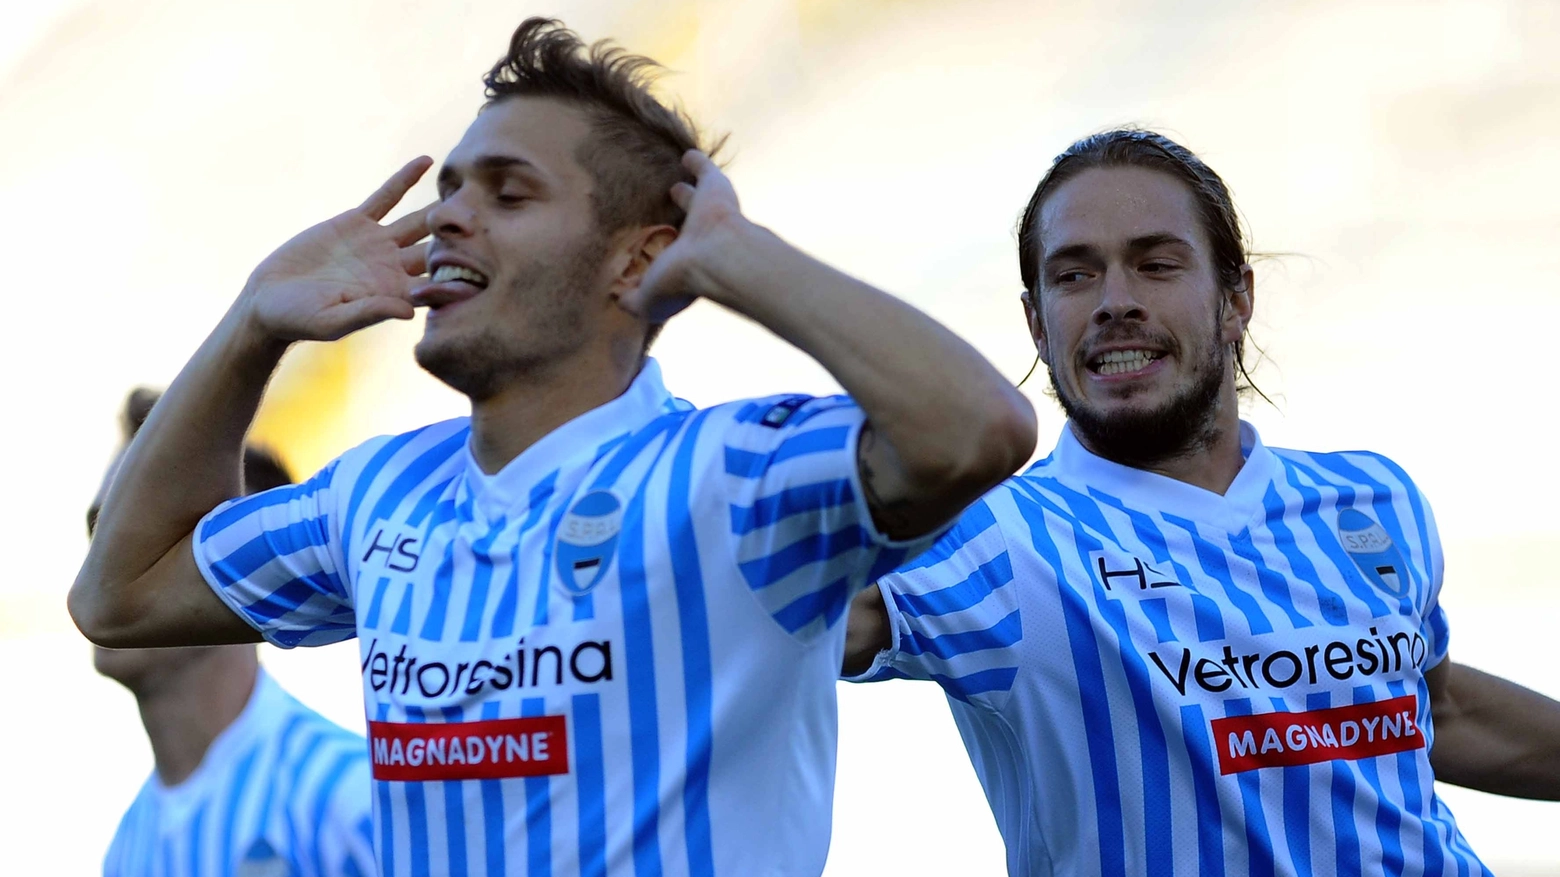 L'esultanza di Finotto dopo il gol contro il Brescia (Businesspress)